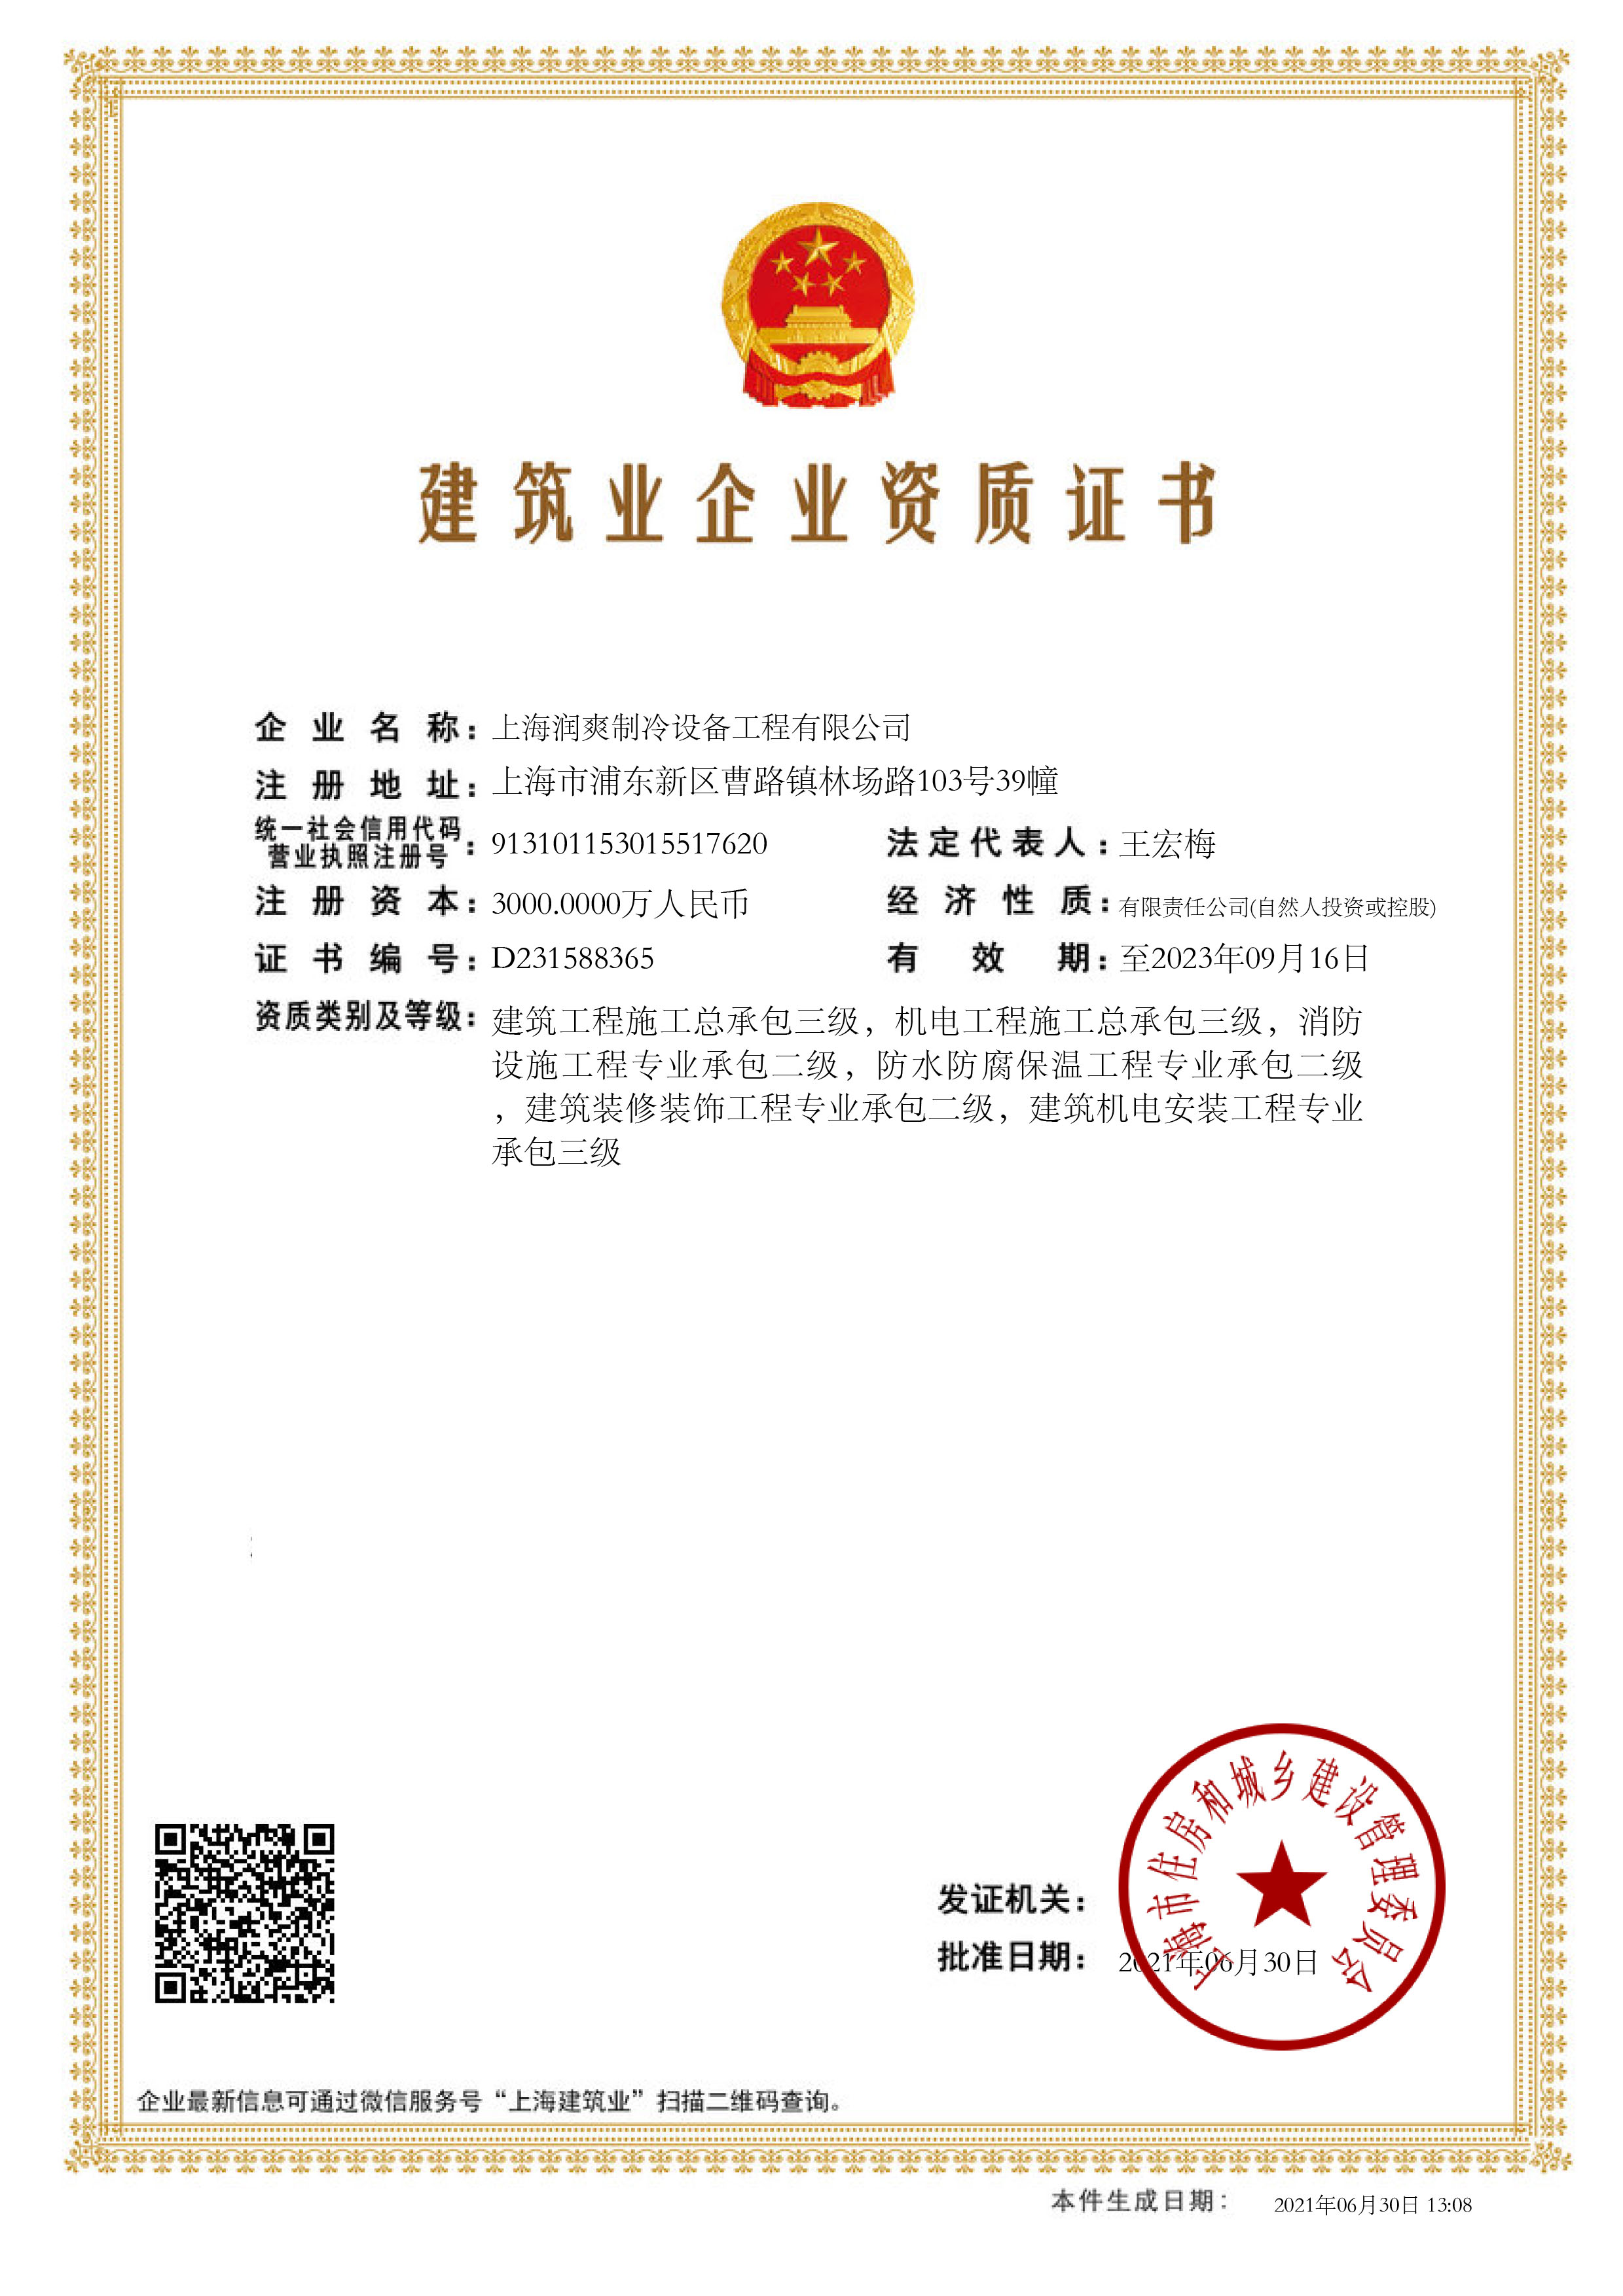 上海润爽环境股份有限公司建筑业企业资质证书-20210630130855234(2).jpg